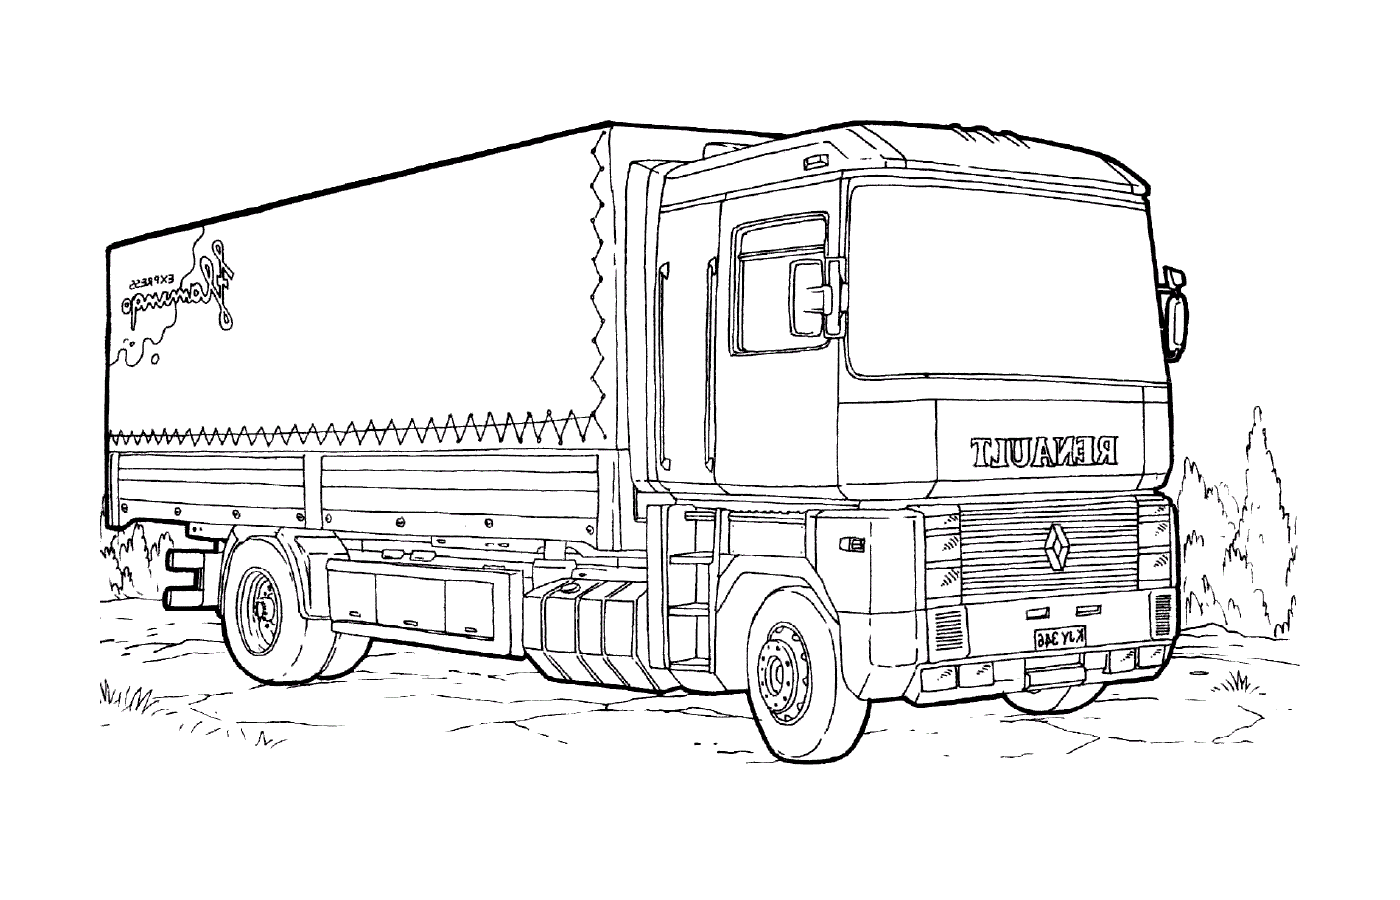  一辆雷诺马格隆卡车 